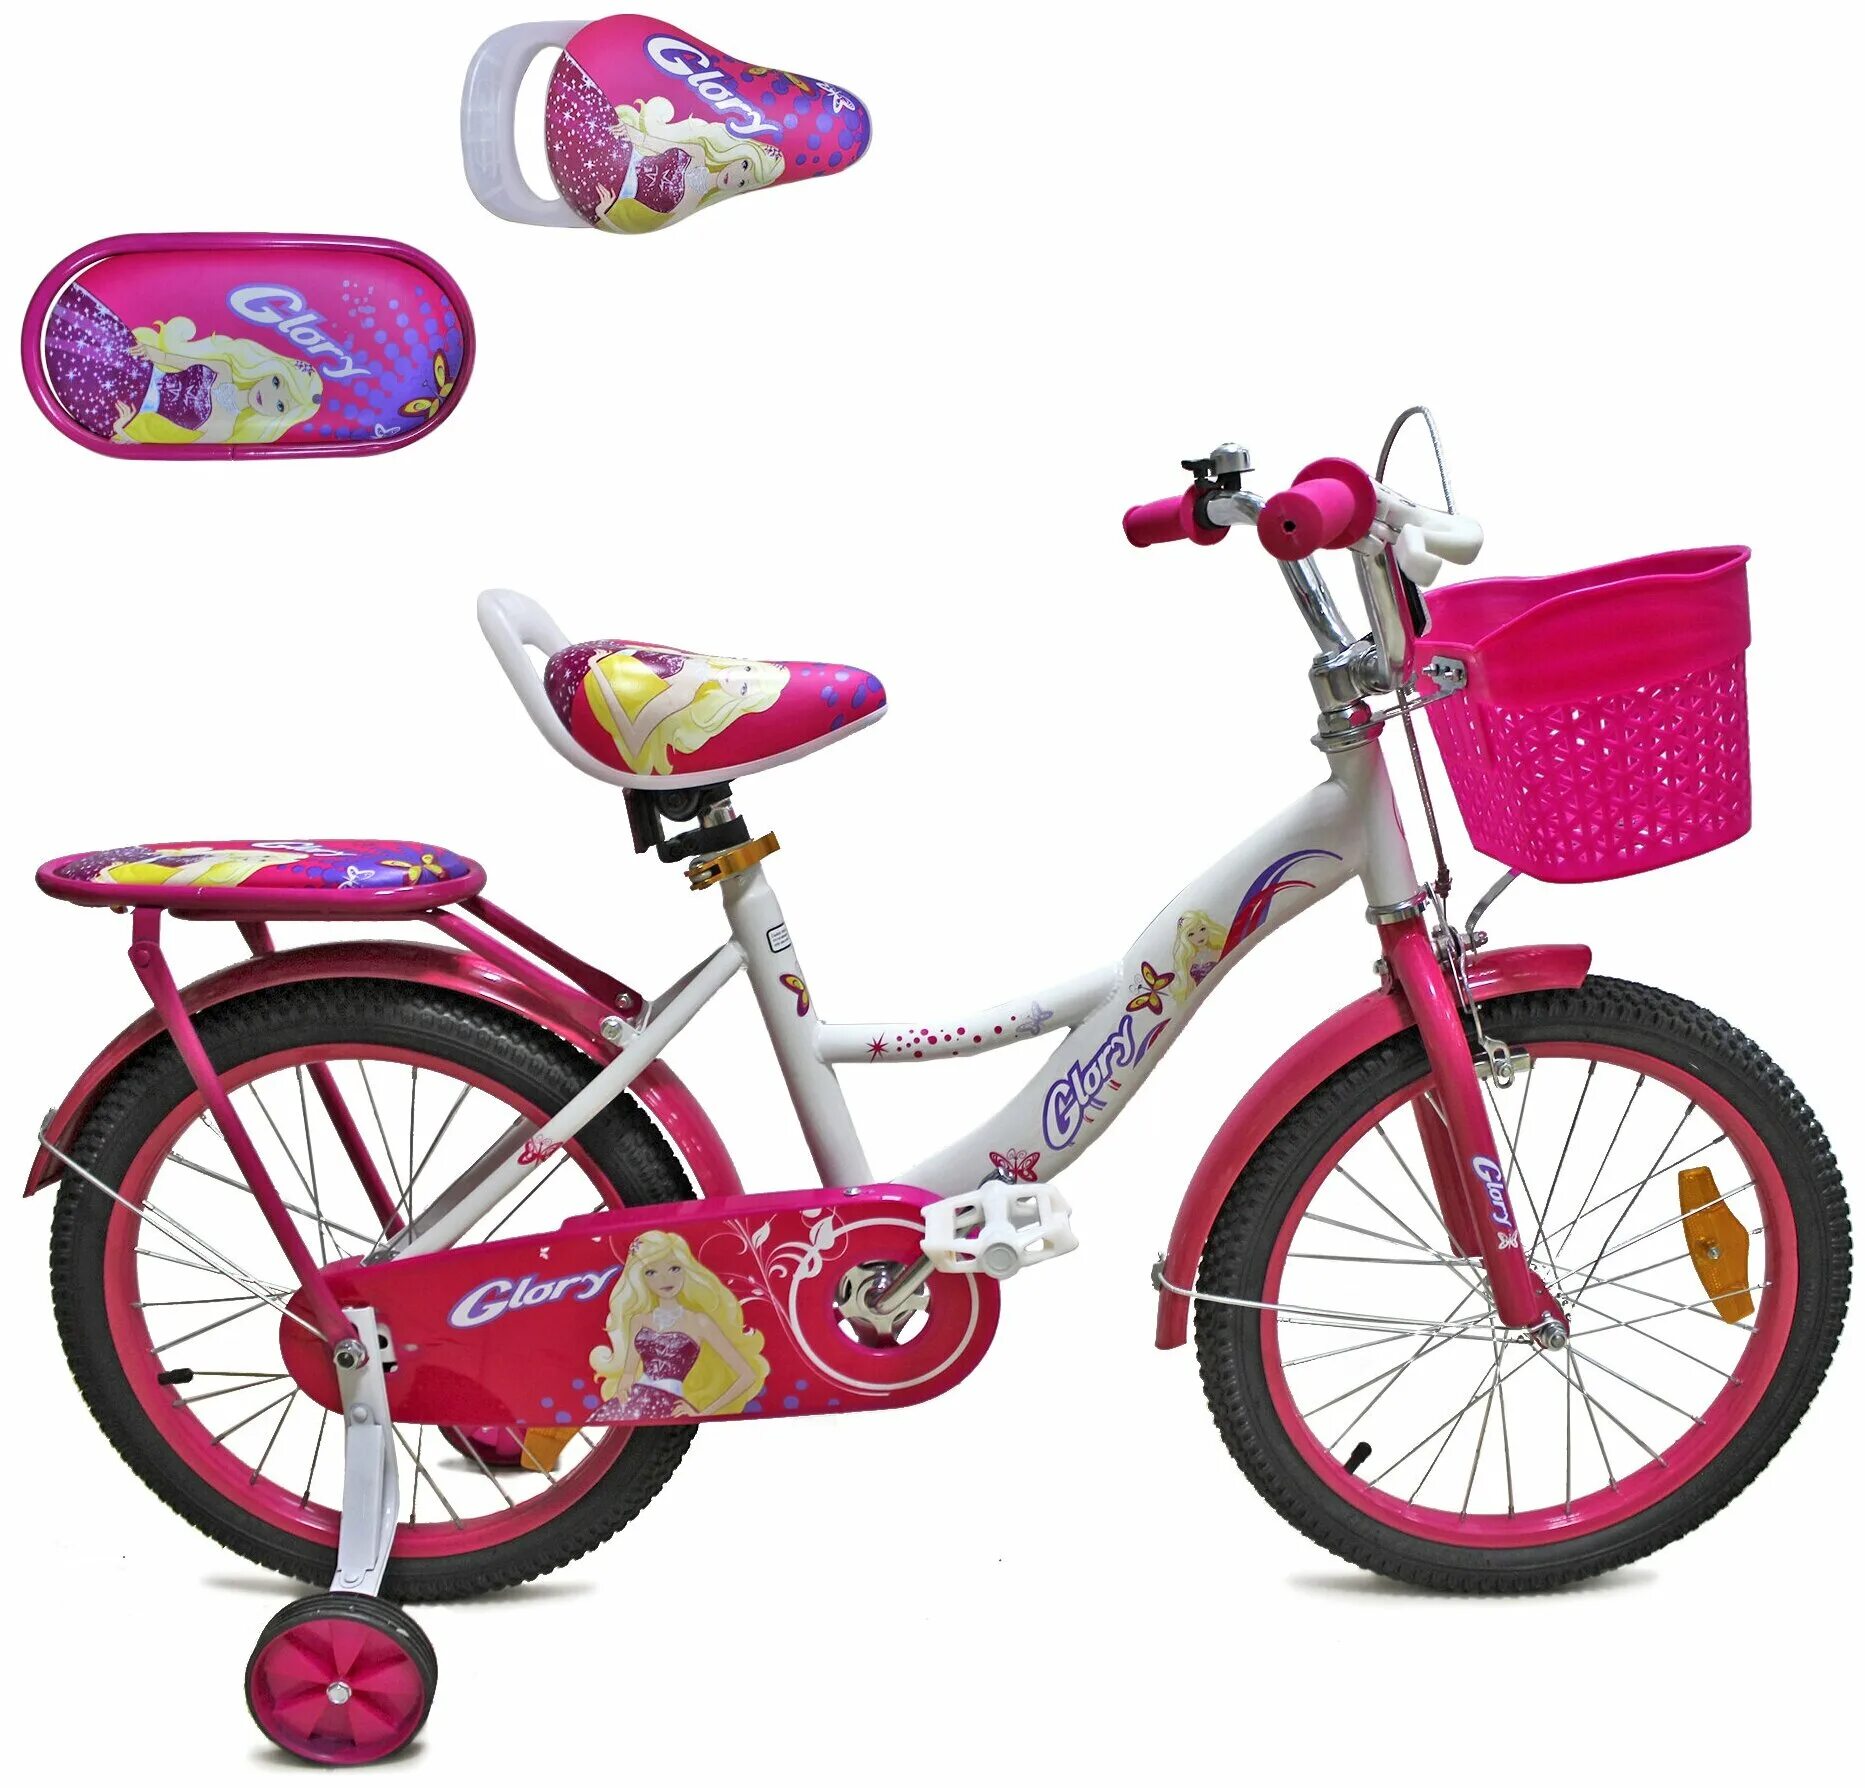 Велосипед детский для девочек 16" Glory, рост 104-122 см, 4-6 лет. Forward велосипед 20 для девочек. Велосипед Glory детский 16 дюймов. Велосипед Глори для девочки. Глори ростов